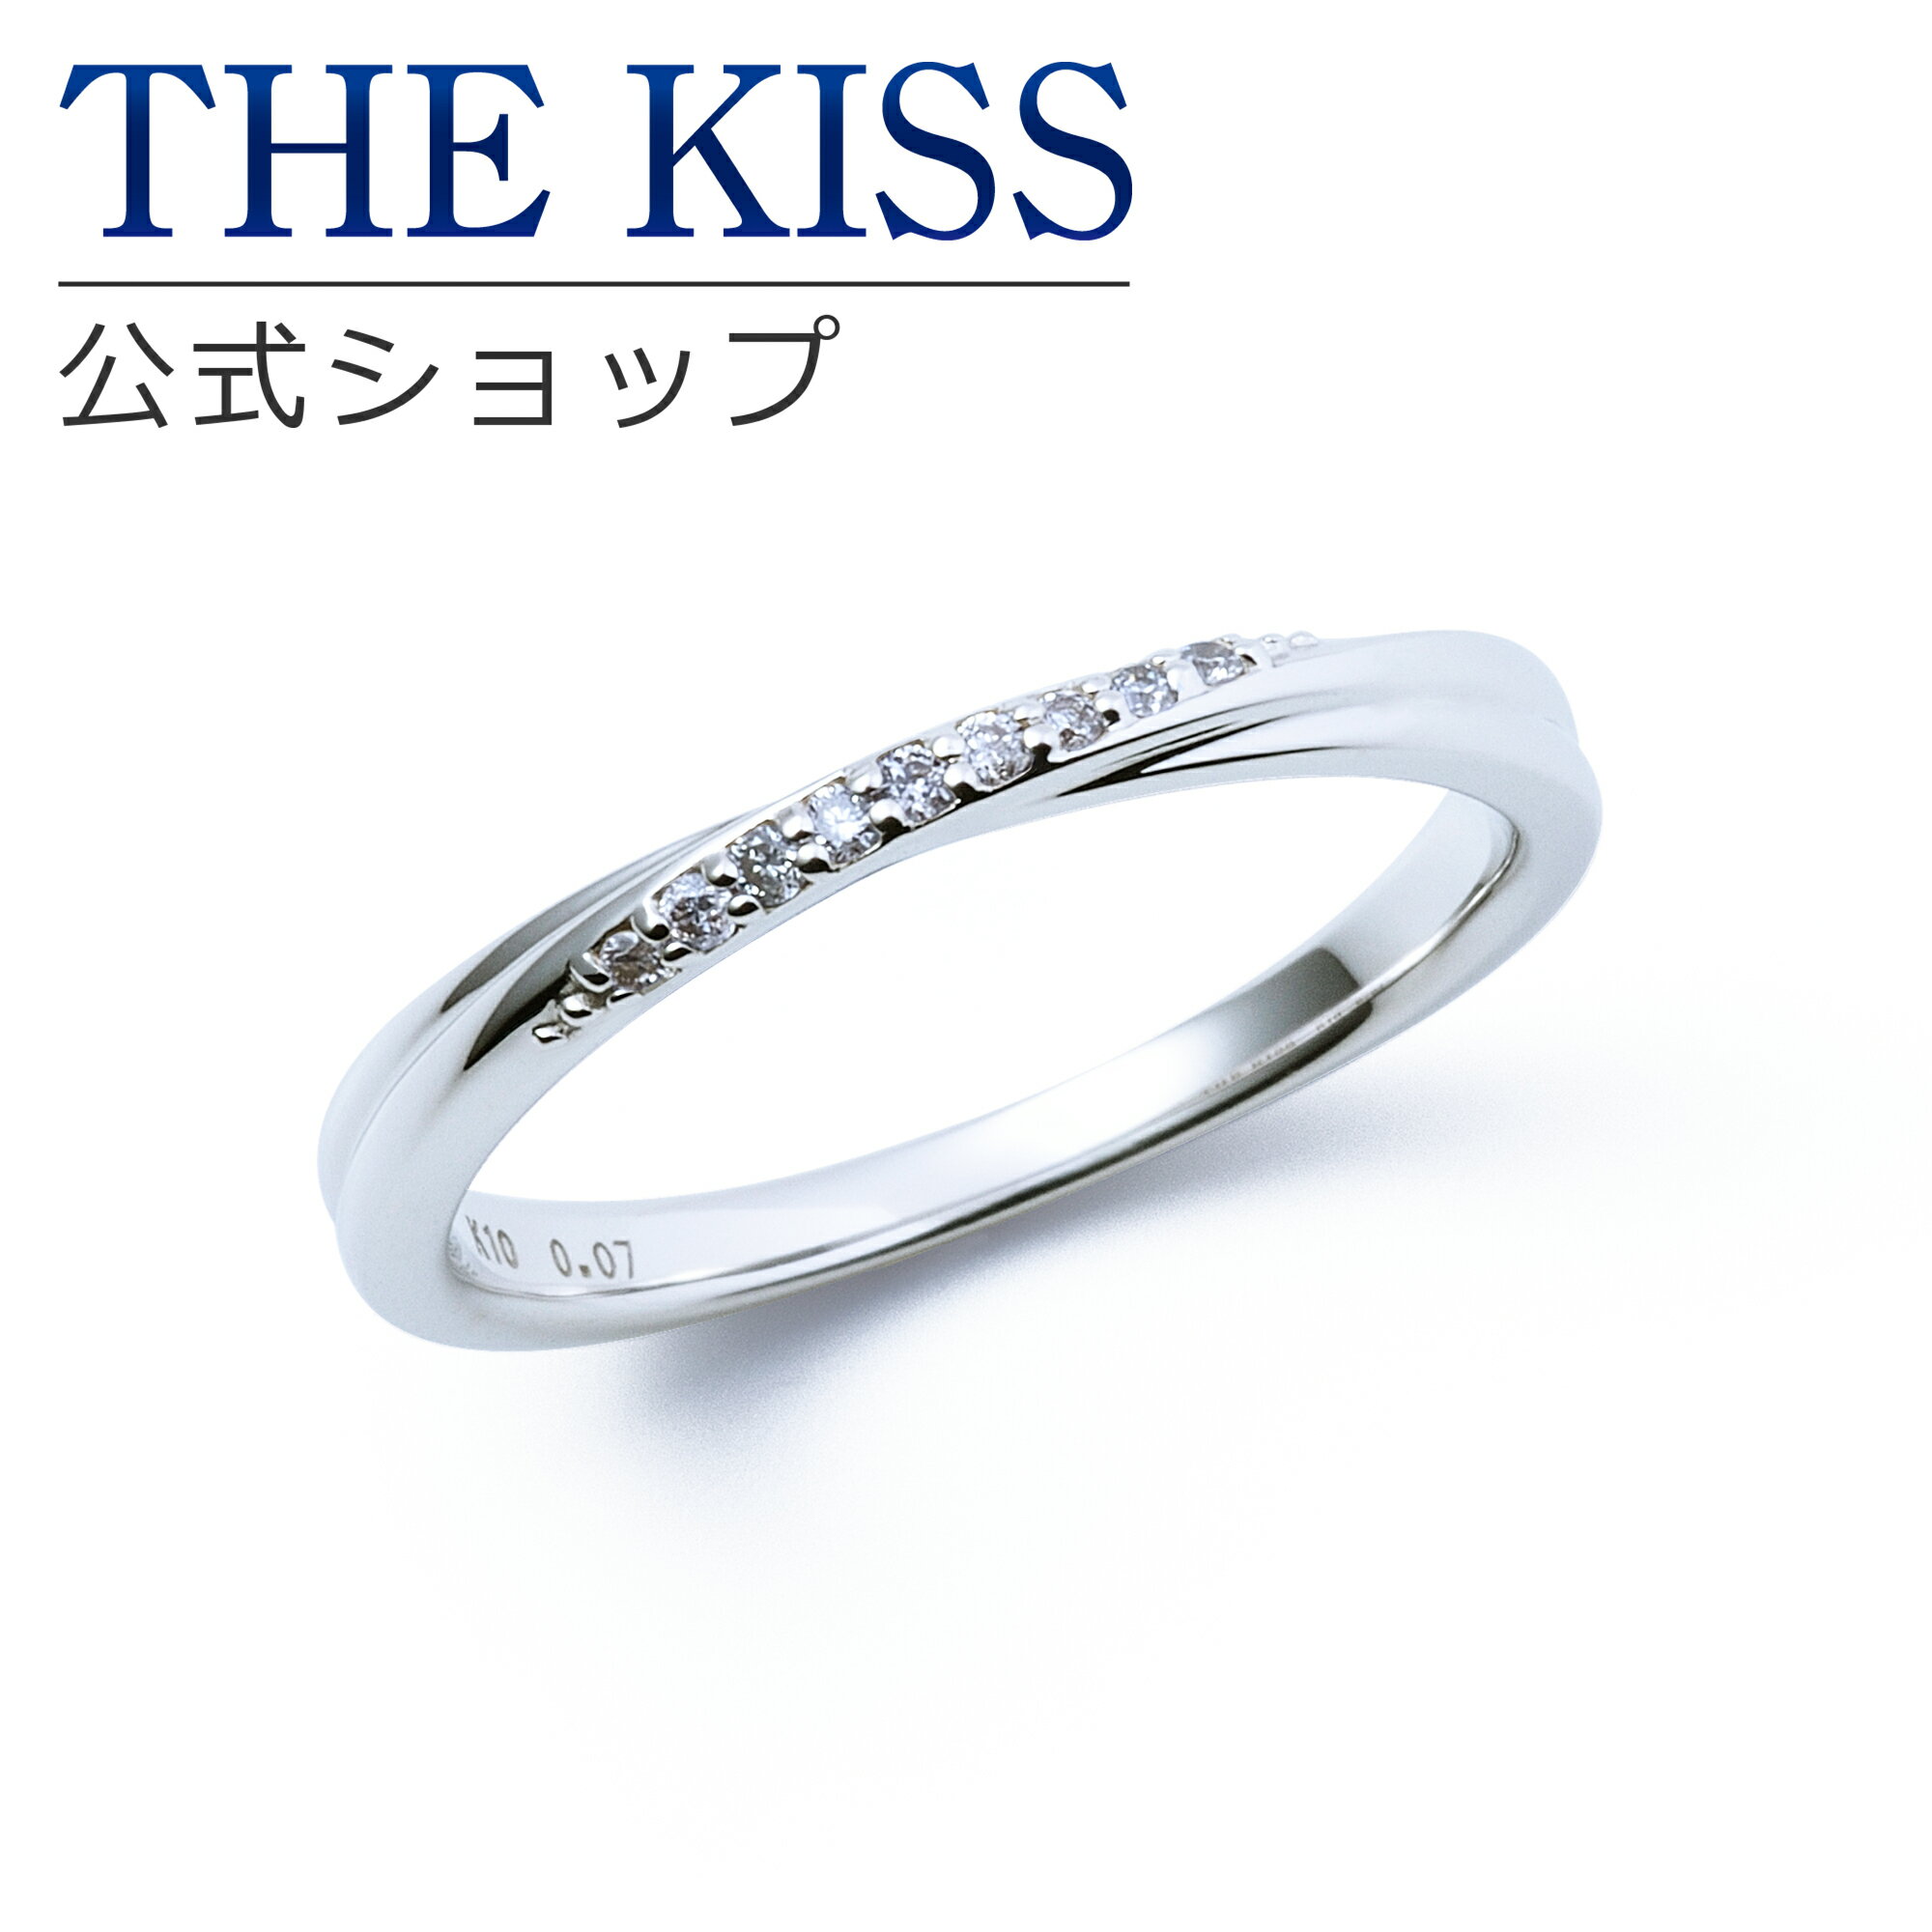 楽天THE KISS 公式ショップ【ラッピング無料】【刻印無料】【THE KISS Anniversary】 THE KISS 公式ショップ K10 ホワイトゴールド マリッジ リング 結婚指輪 ペアリング （ レディース 単品 ） wg カップル 人気 ジュエリーブランド THEKISS ザキッス 指輪 7621122021 シンプル 女性 ブライダル